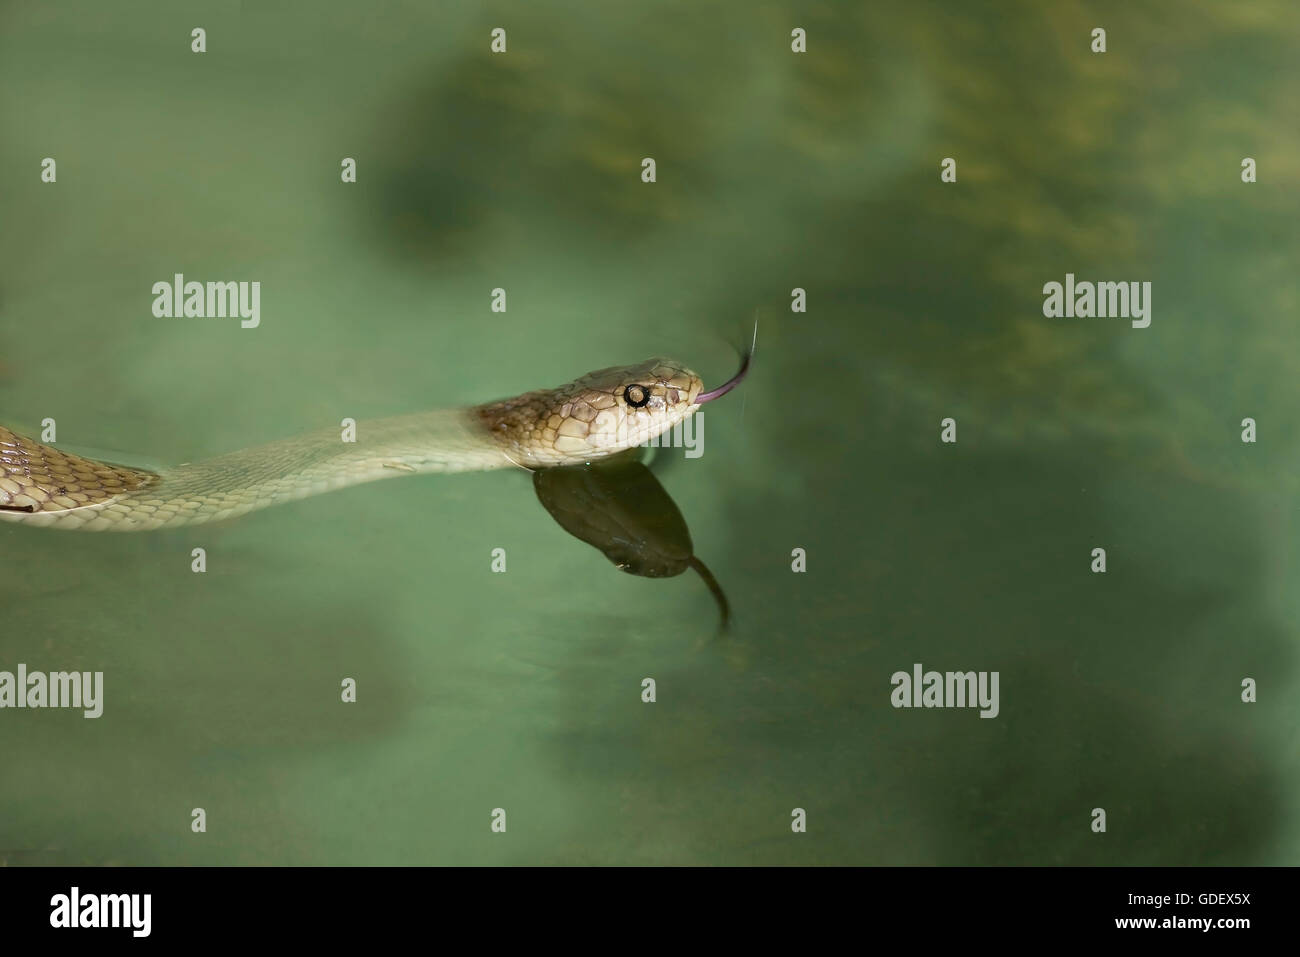 Chinese ratsnake, Phu Quoc, Vietnam / Indo-Chinese rat snake, flickering its tongue Stock Photo